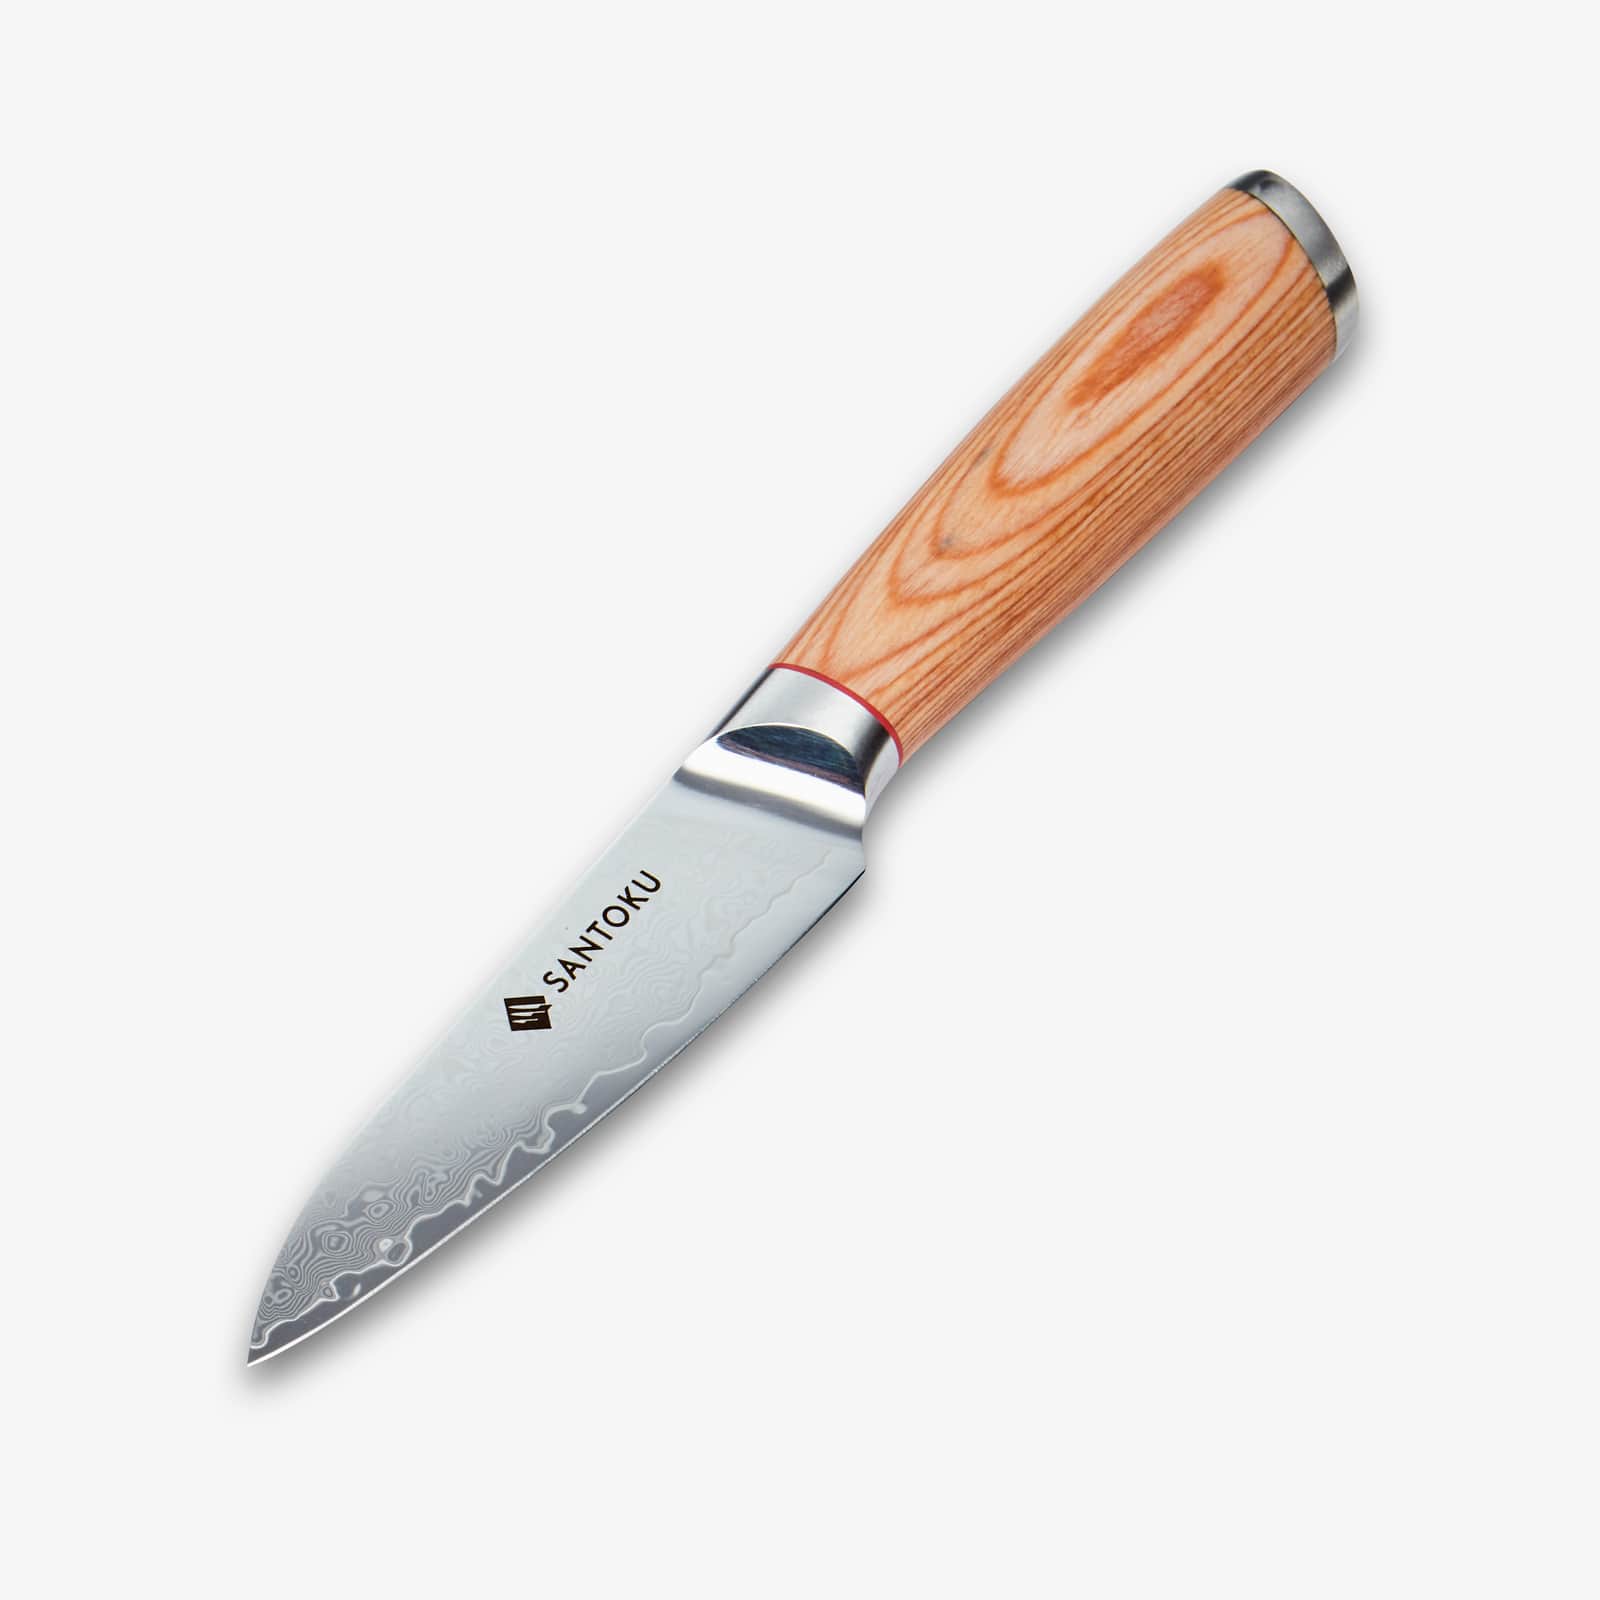 Haruta (はる はる) 4 tommer paring kniv